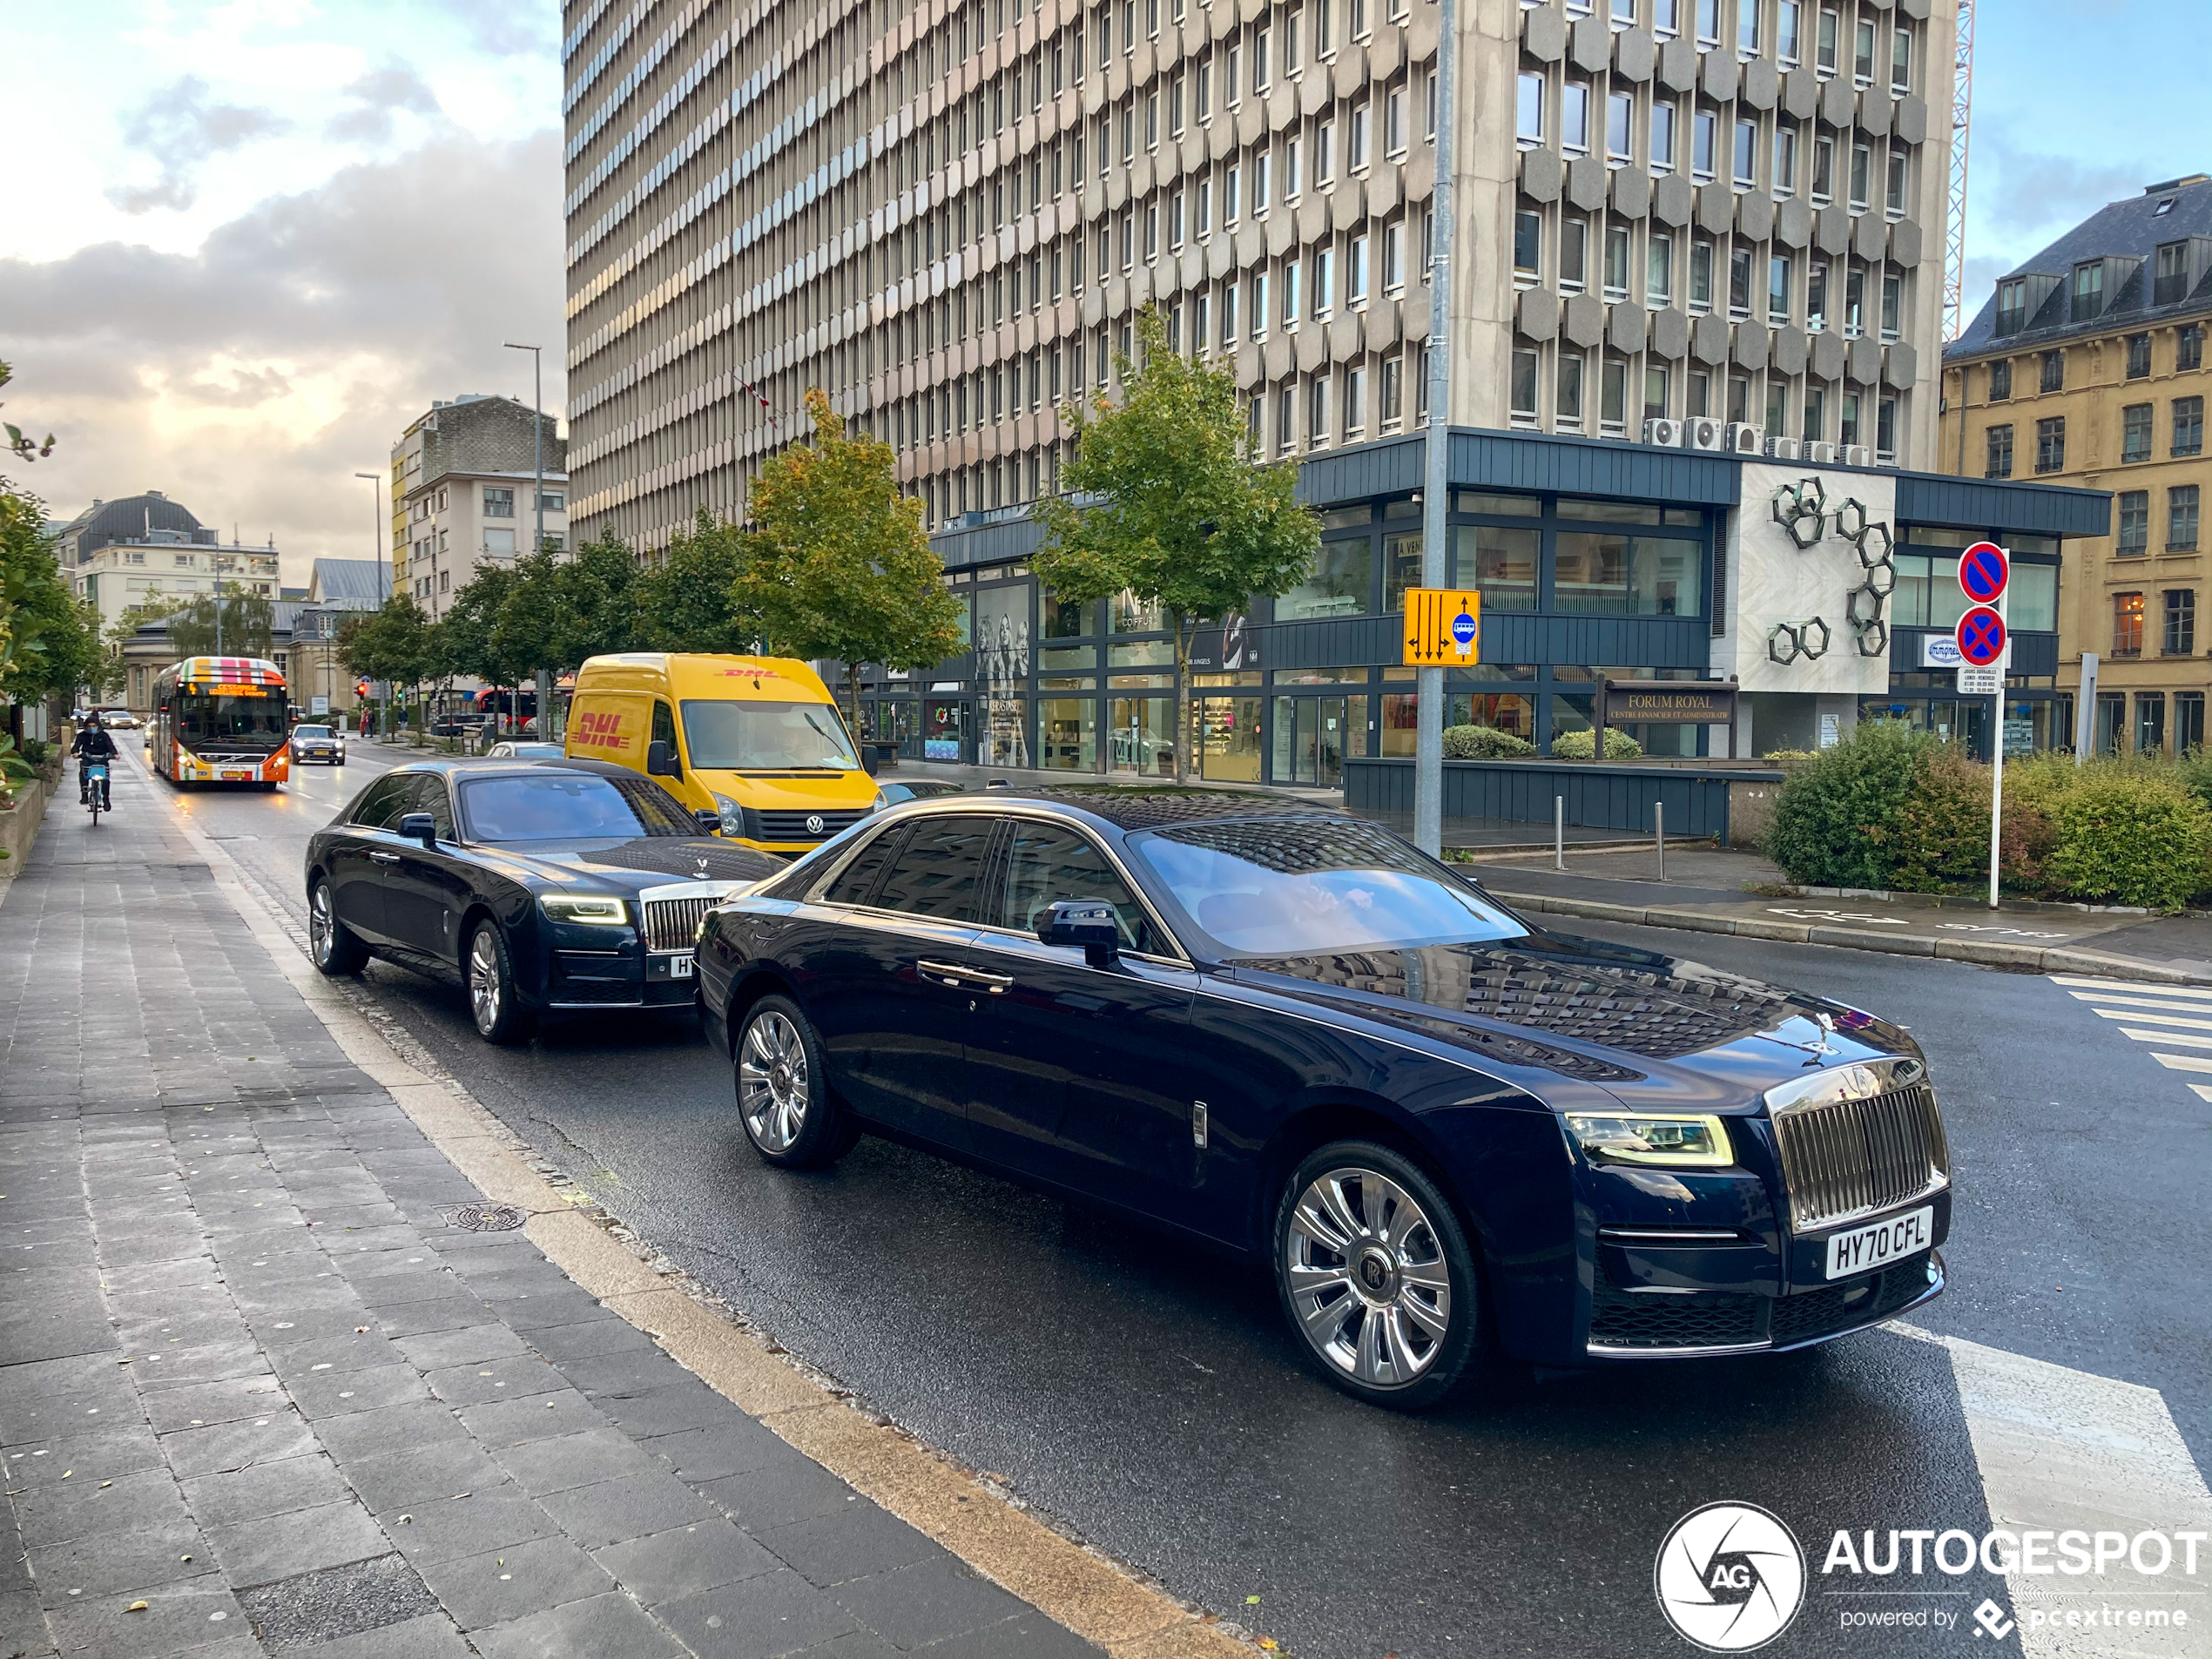 Daar is hij dan: nieuwe Rolls-Royce Ghost gespot op straat